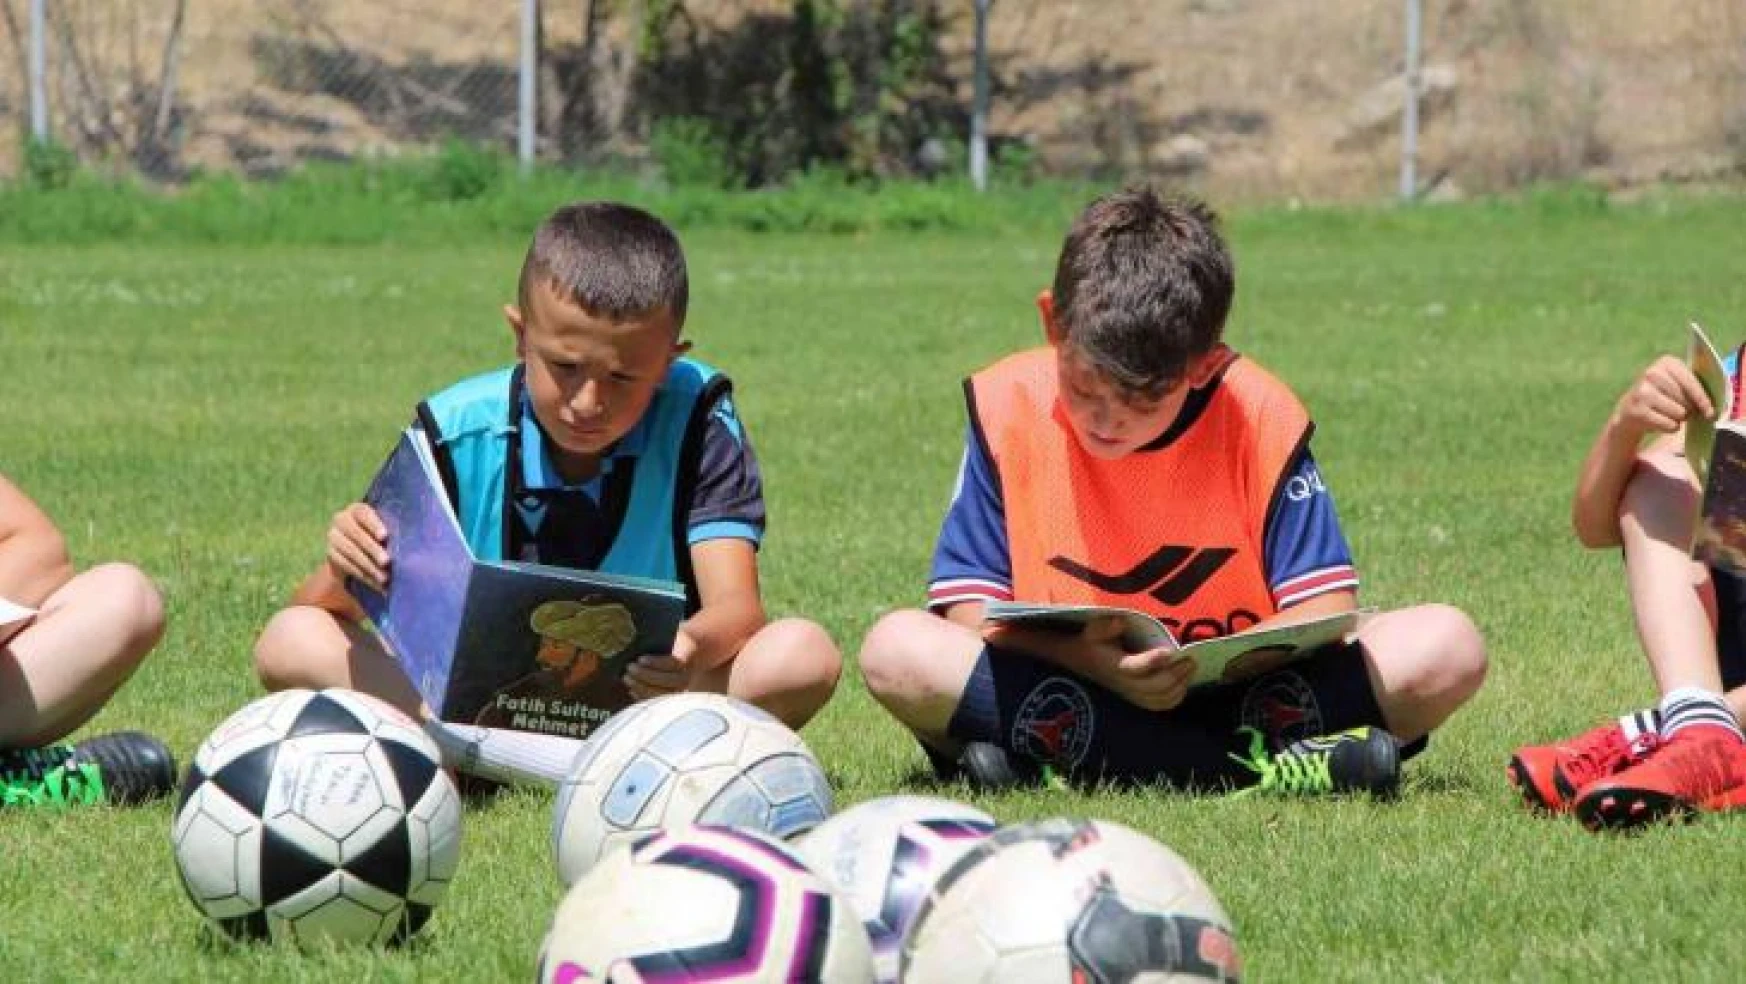 Önce kitap okuyorlar, sonra futbol oynuyorlar